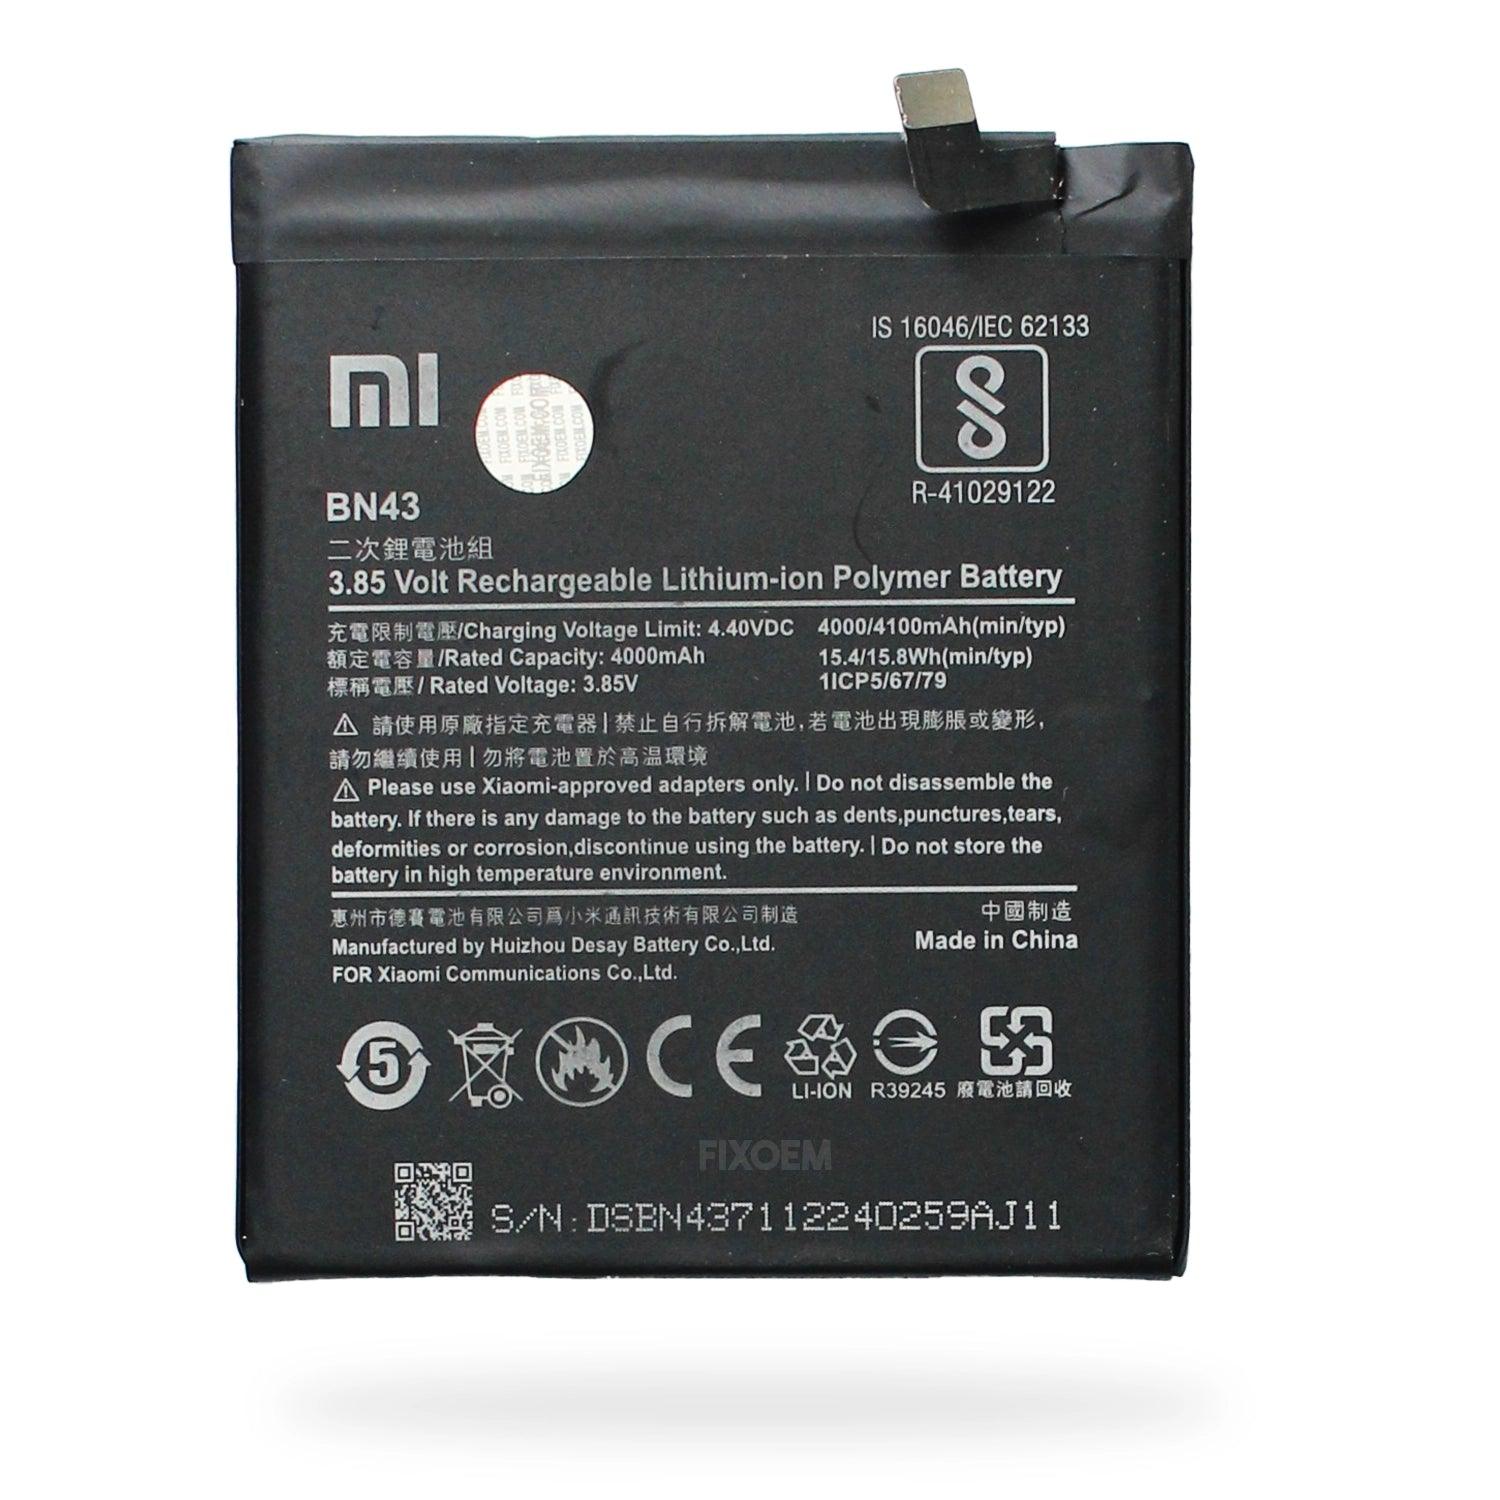 Bateria Xiaomi Redmi Note 4X Bn43 |+2,000 reseñas 4.8/5 ⭐